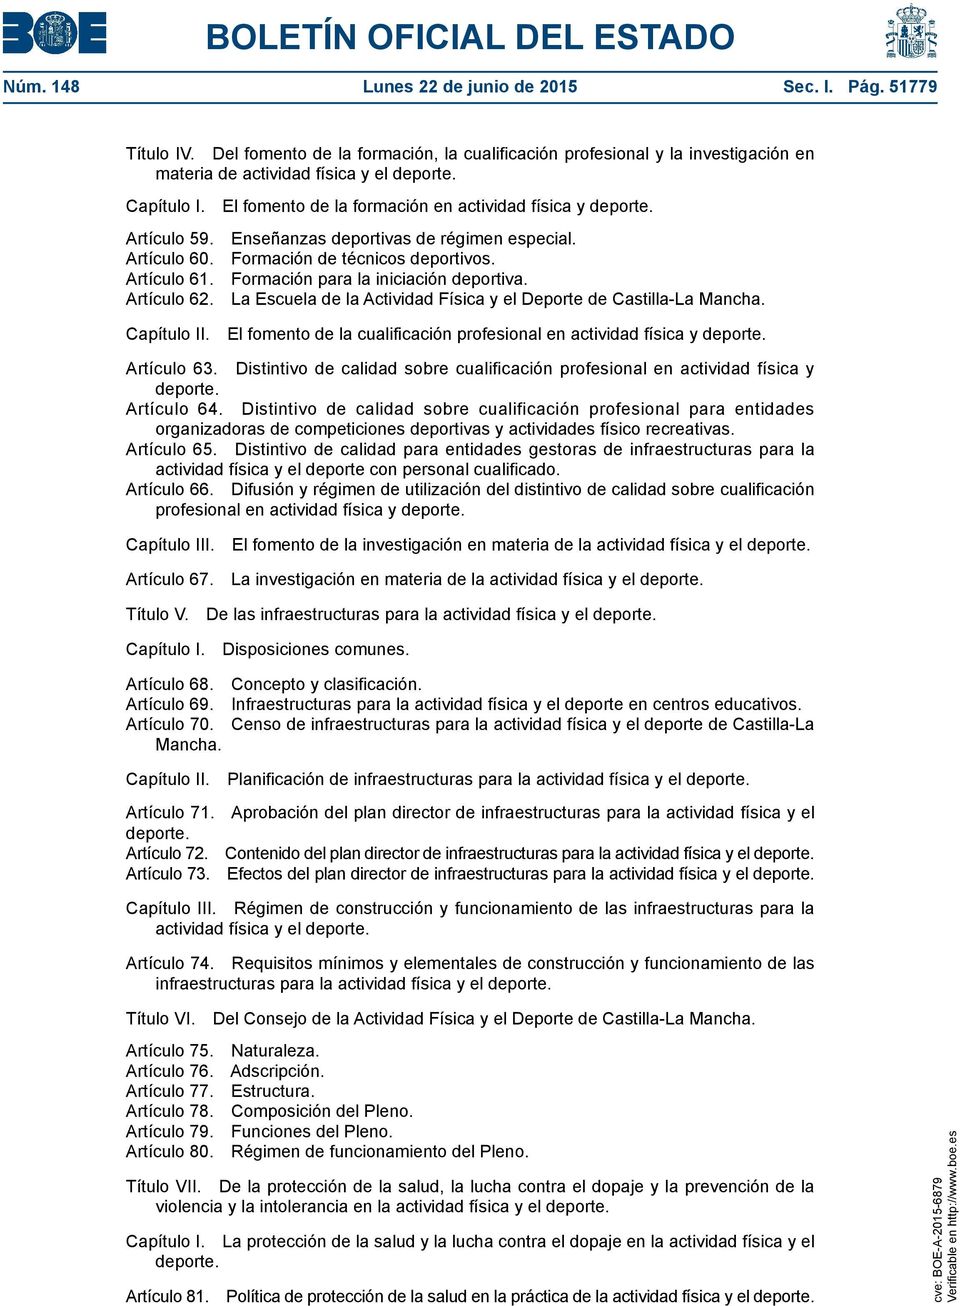 Formación para la iniciación deportiva. Artículo 62. La Escuela de la Actividad Física y el Deporte de Castilla-La Mancha. Capítulo II.